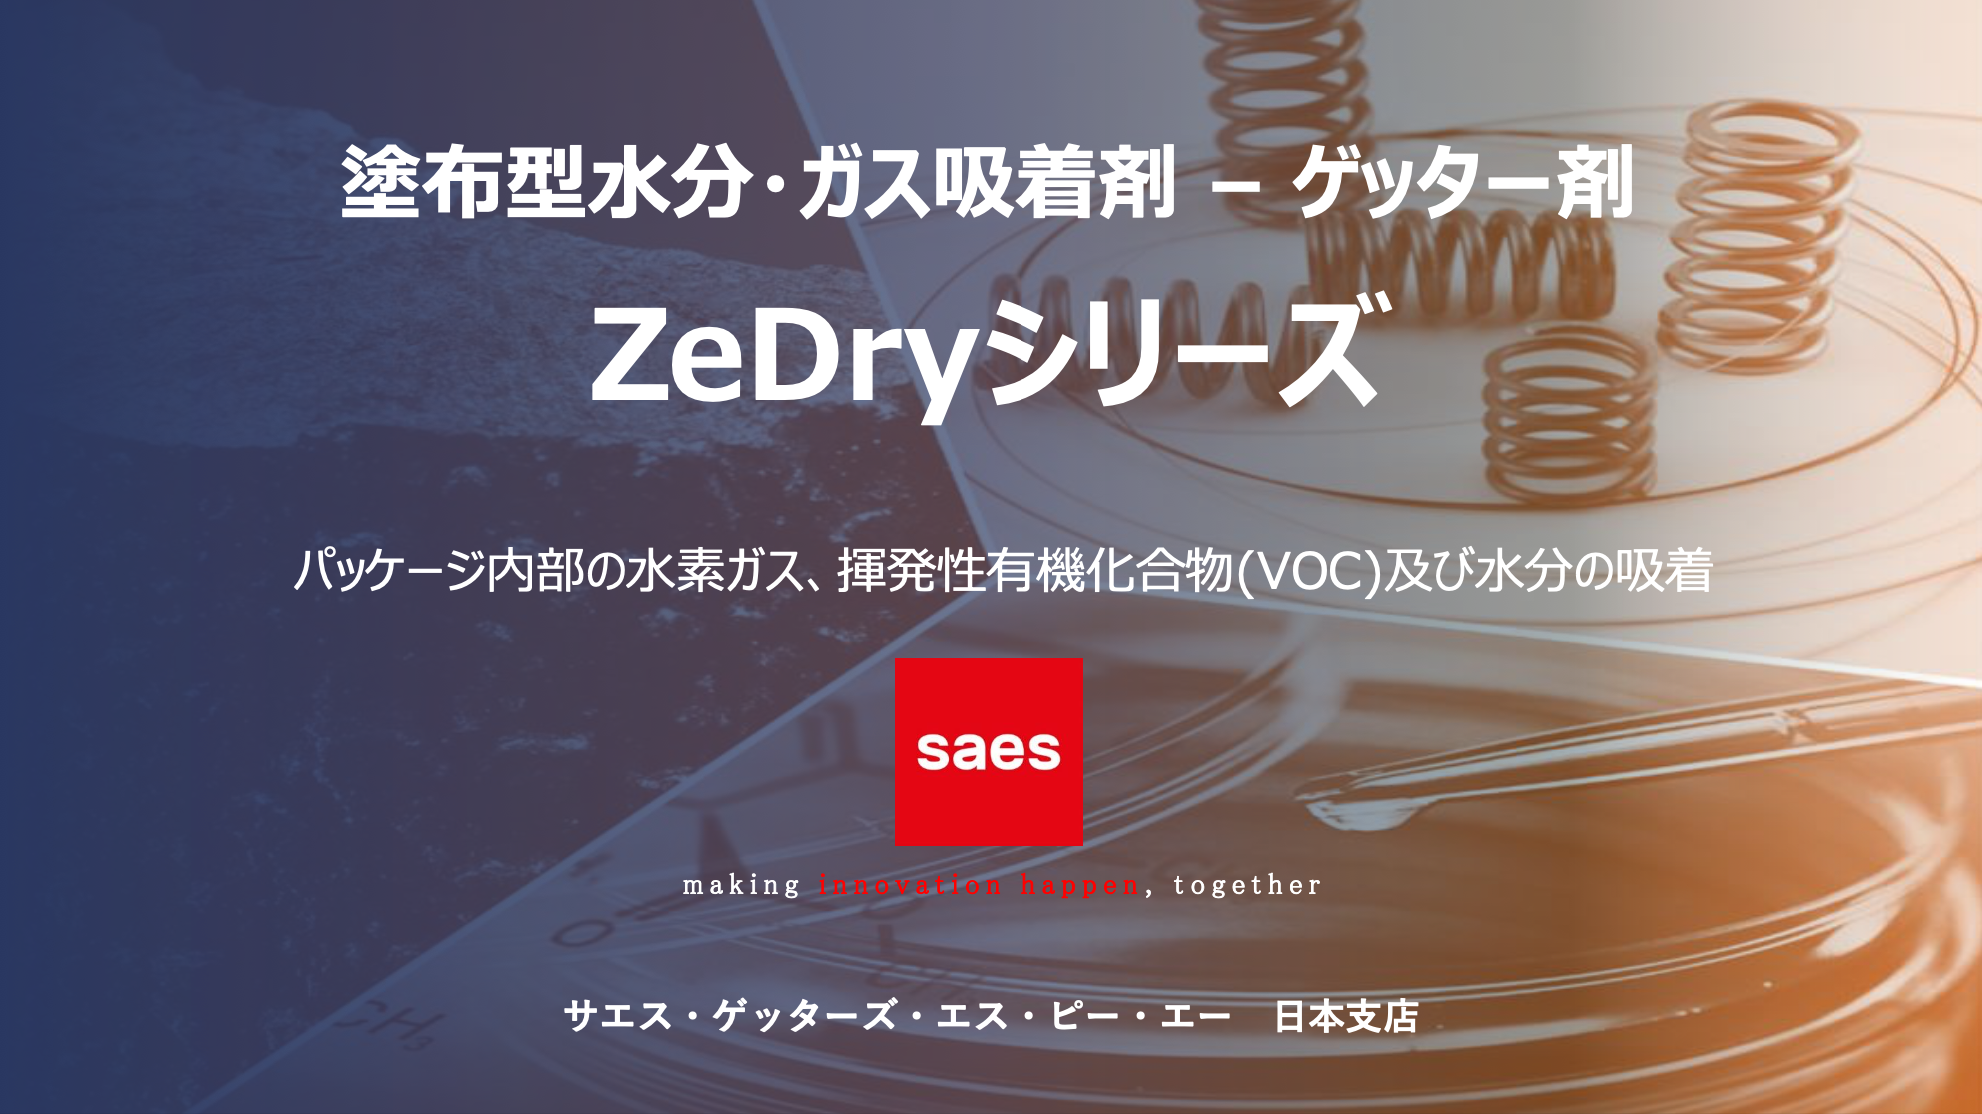 塗布型水分・ガス吸着剤/ゲッター剤 「ZeDryシリーズ」  資料